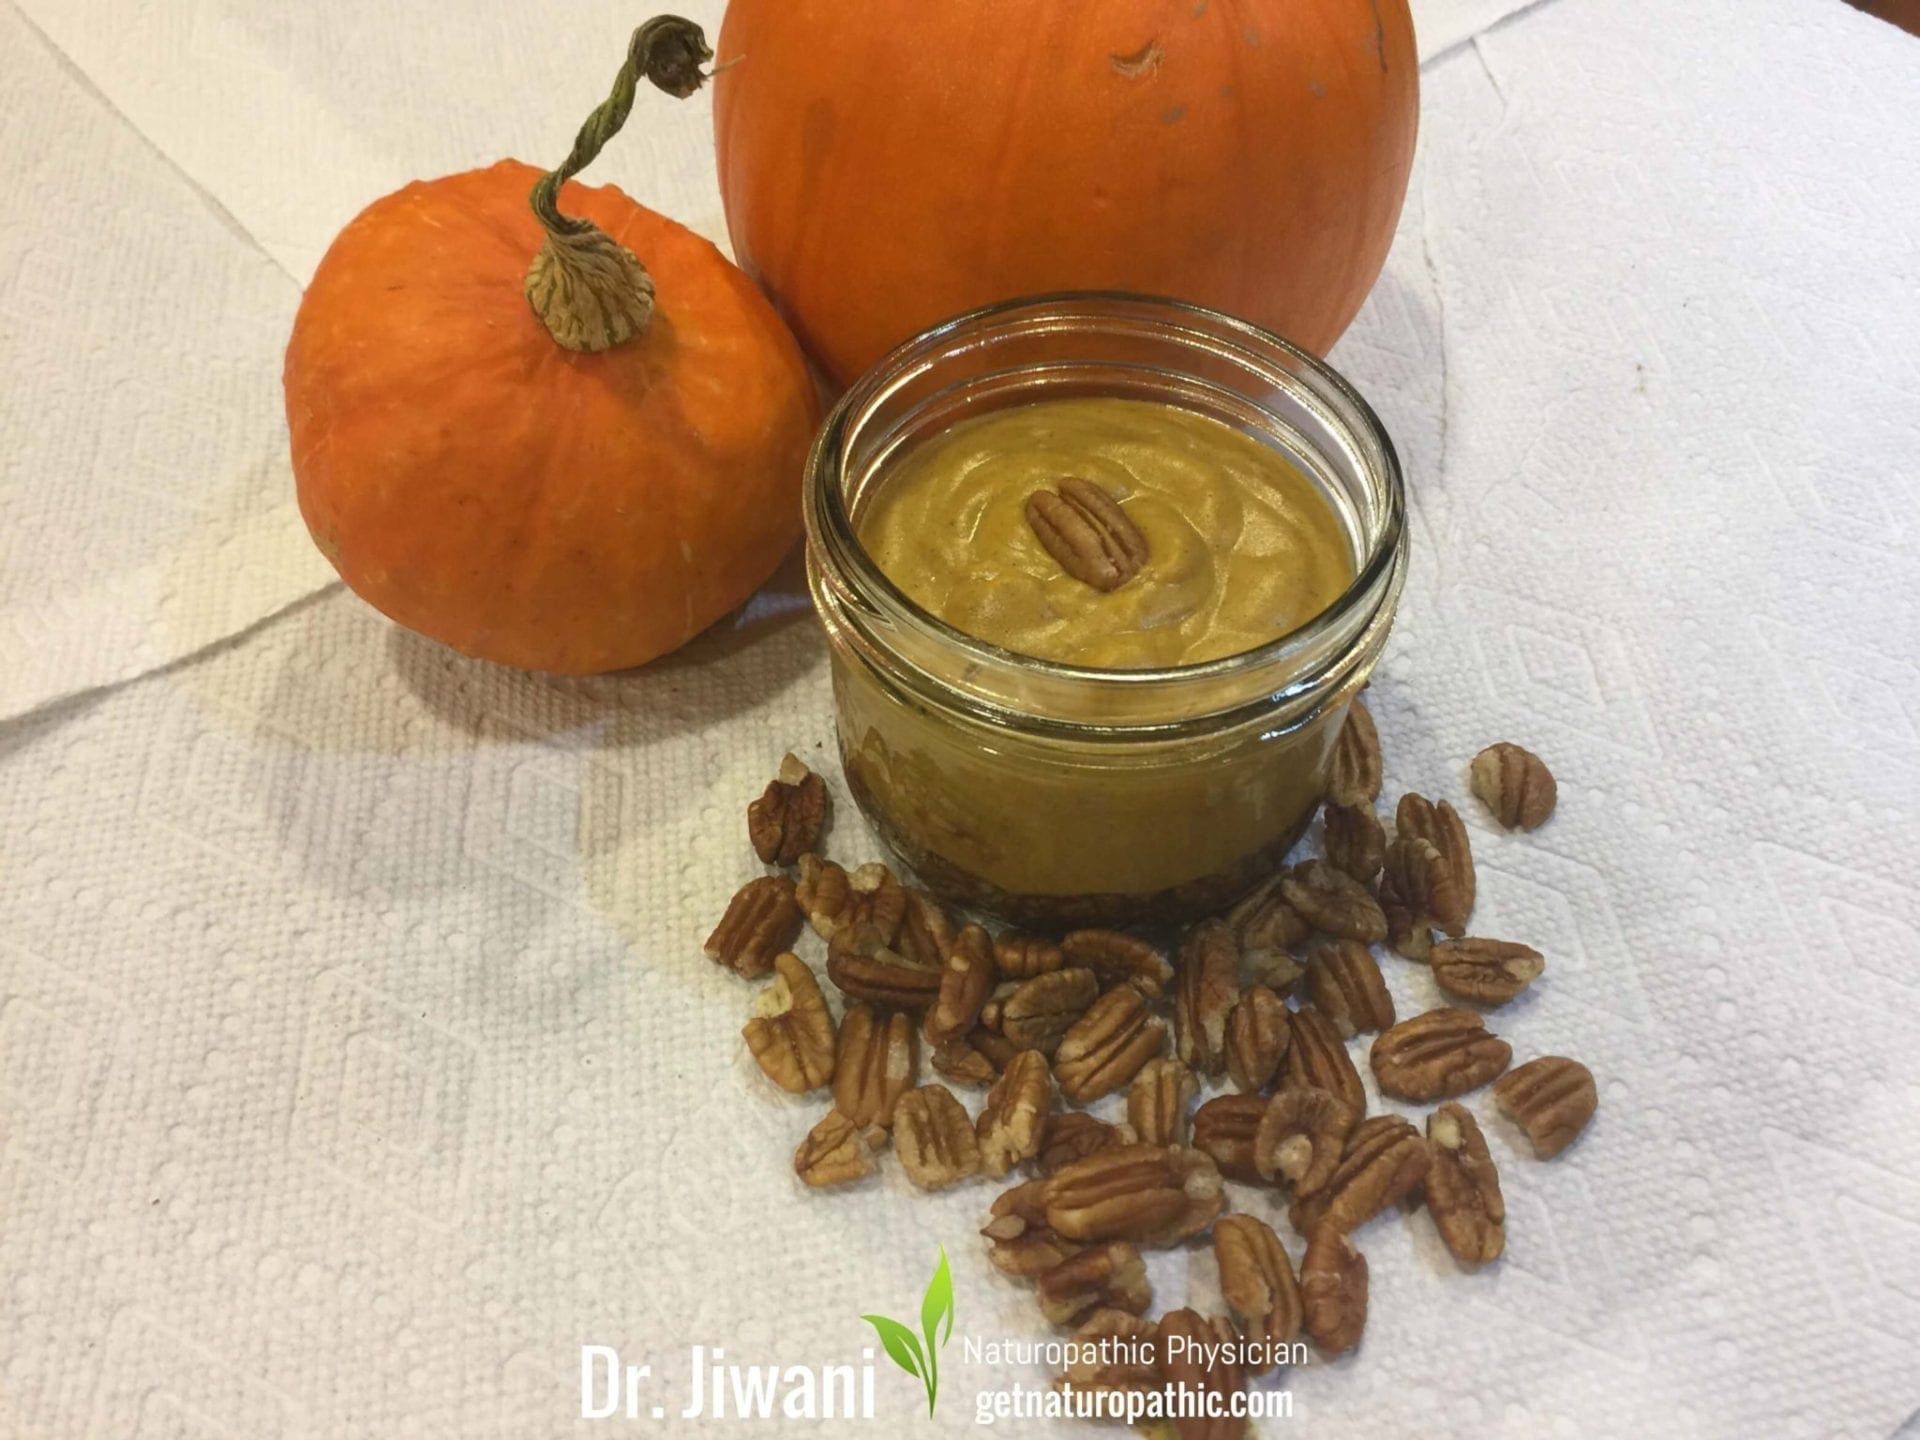 Recipe: Dr. Jiwani’s Pumpkin Pie Filling